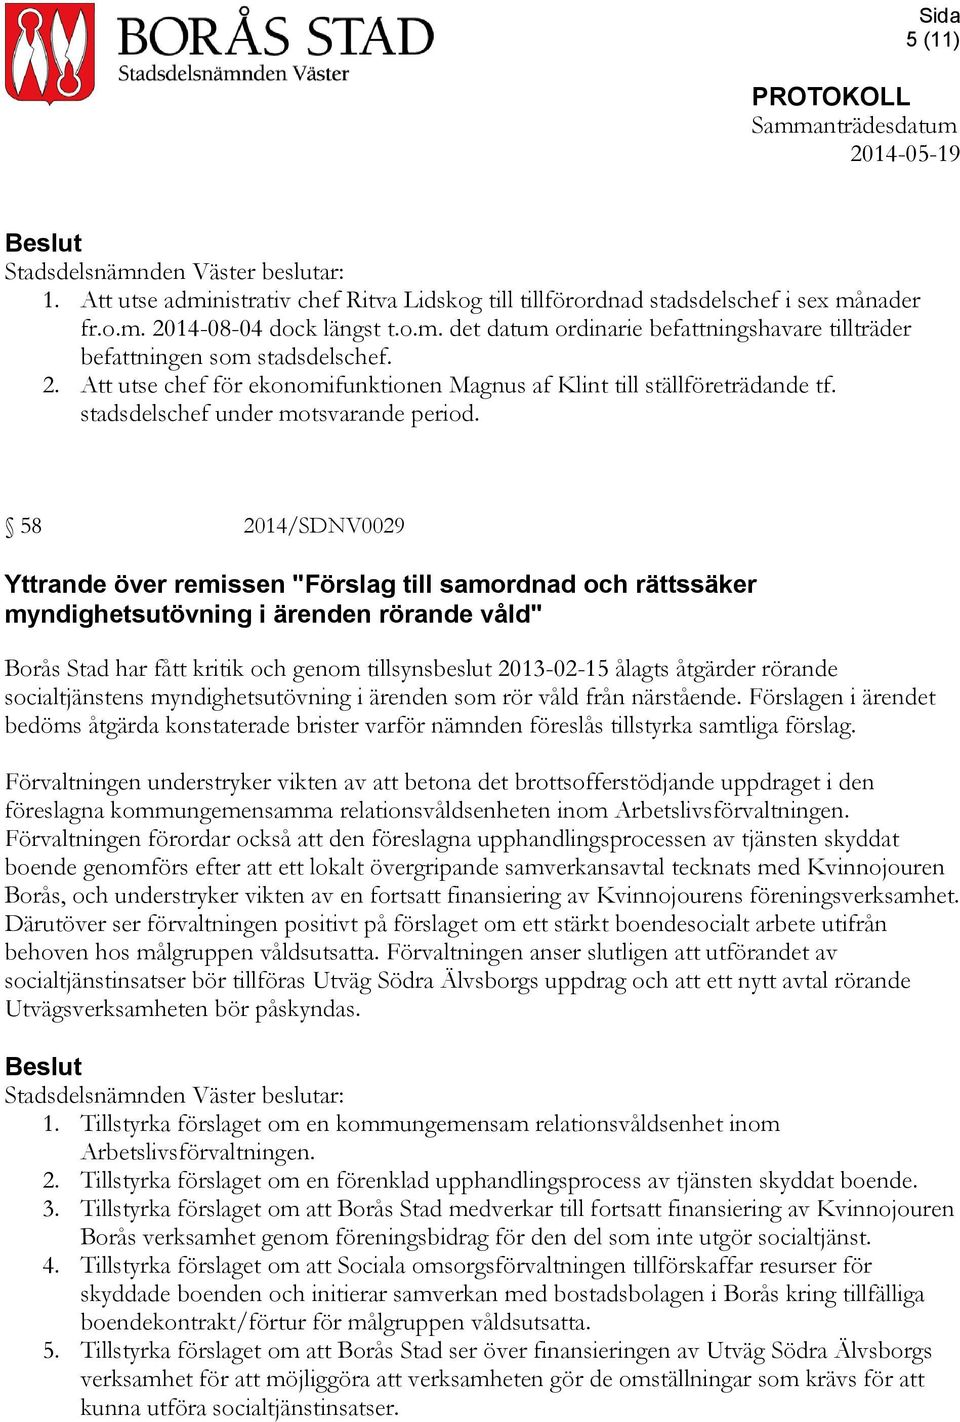 58 2014/SDNV0029 Yttrande över remissen "Förslag till samordnad och rättssäker myndighetsutövning i ärenden rörande våld" Borås Stad har fått kritik och genom tillsynsbeslut 2013-02-15 ålagts